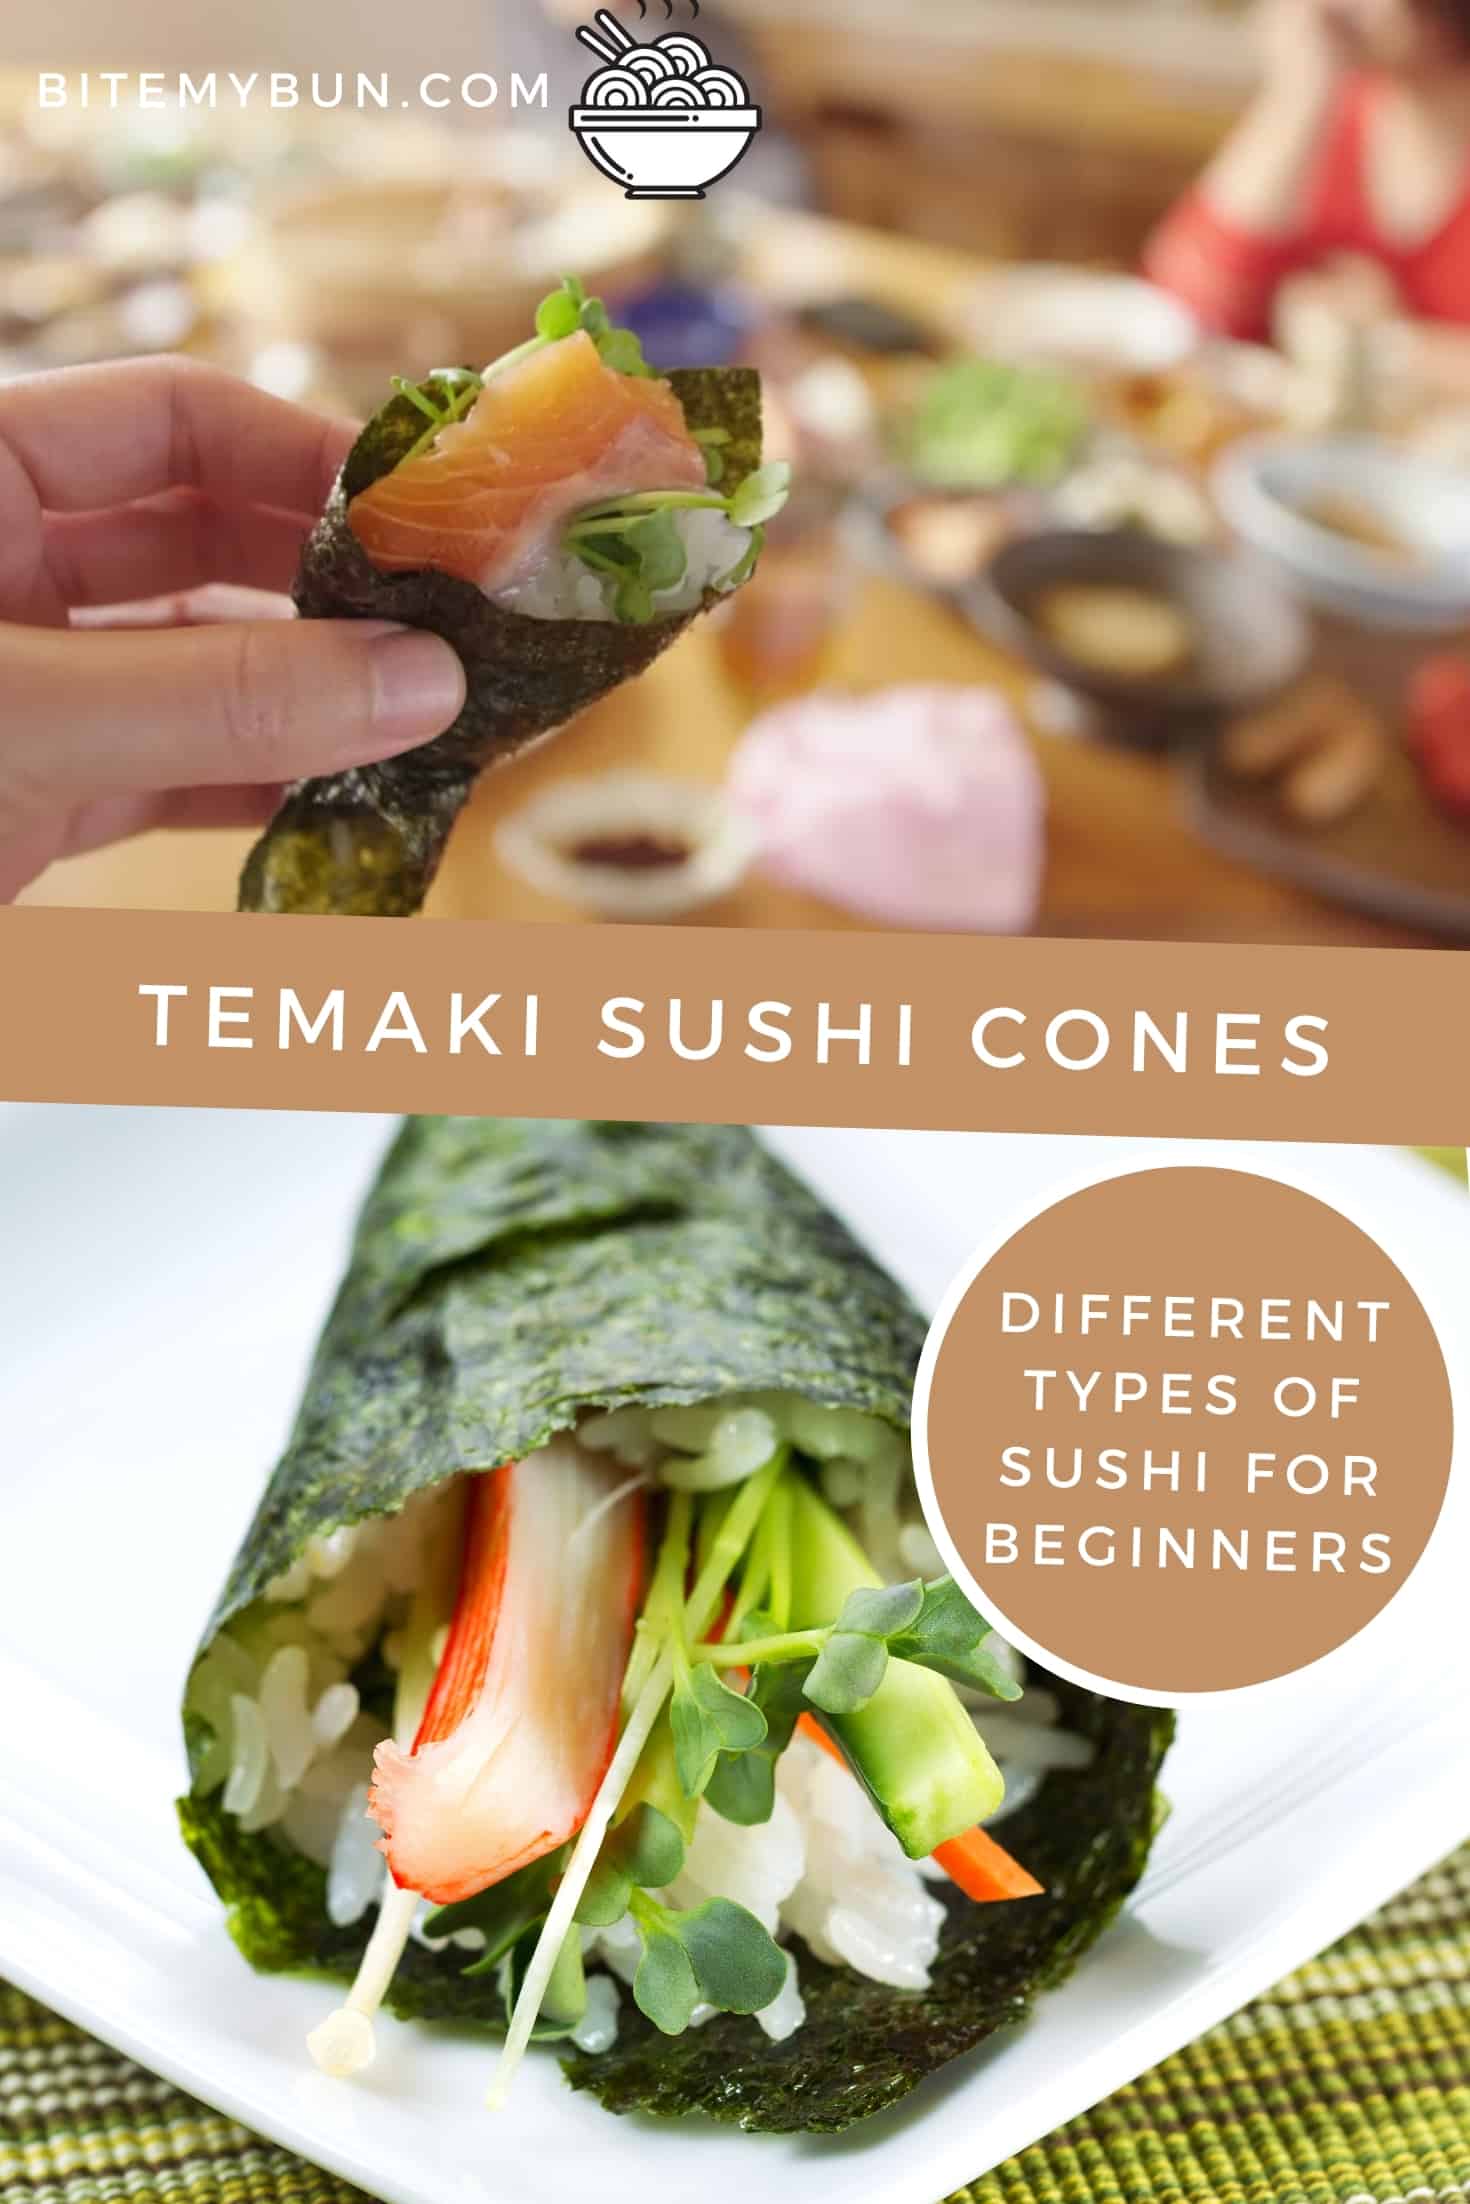 Temaki sushi cones